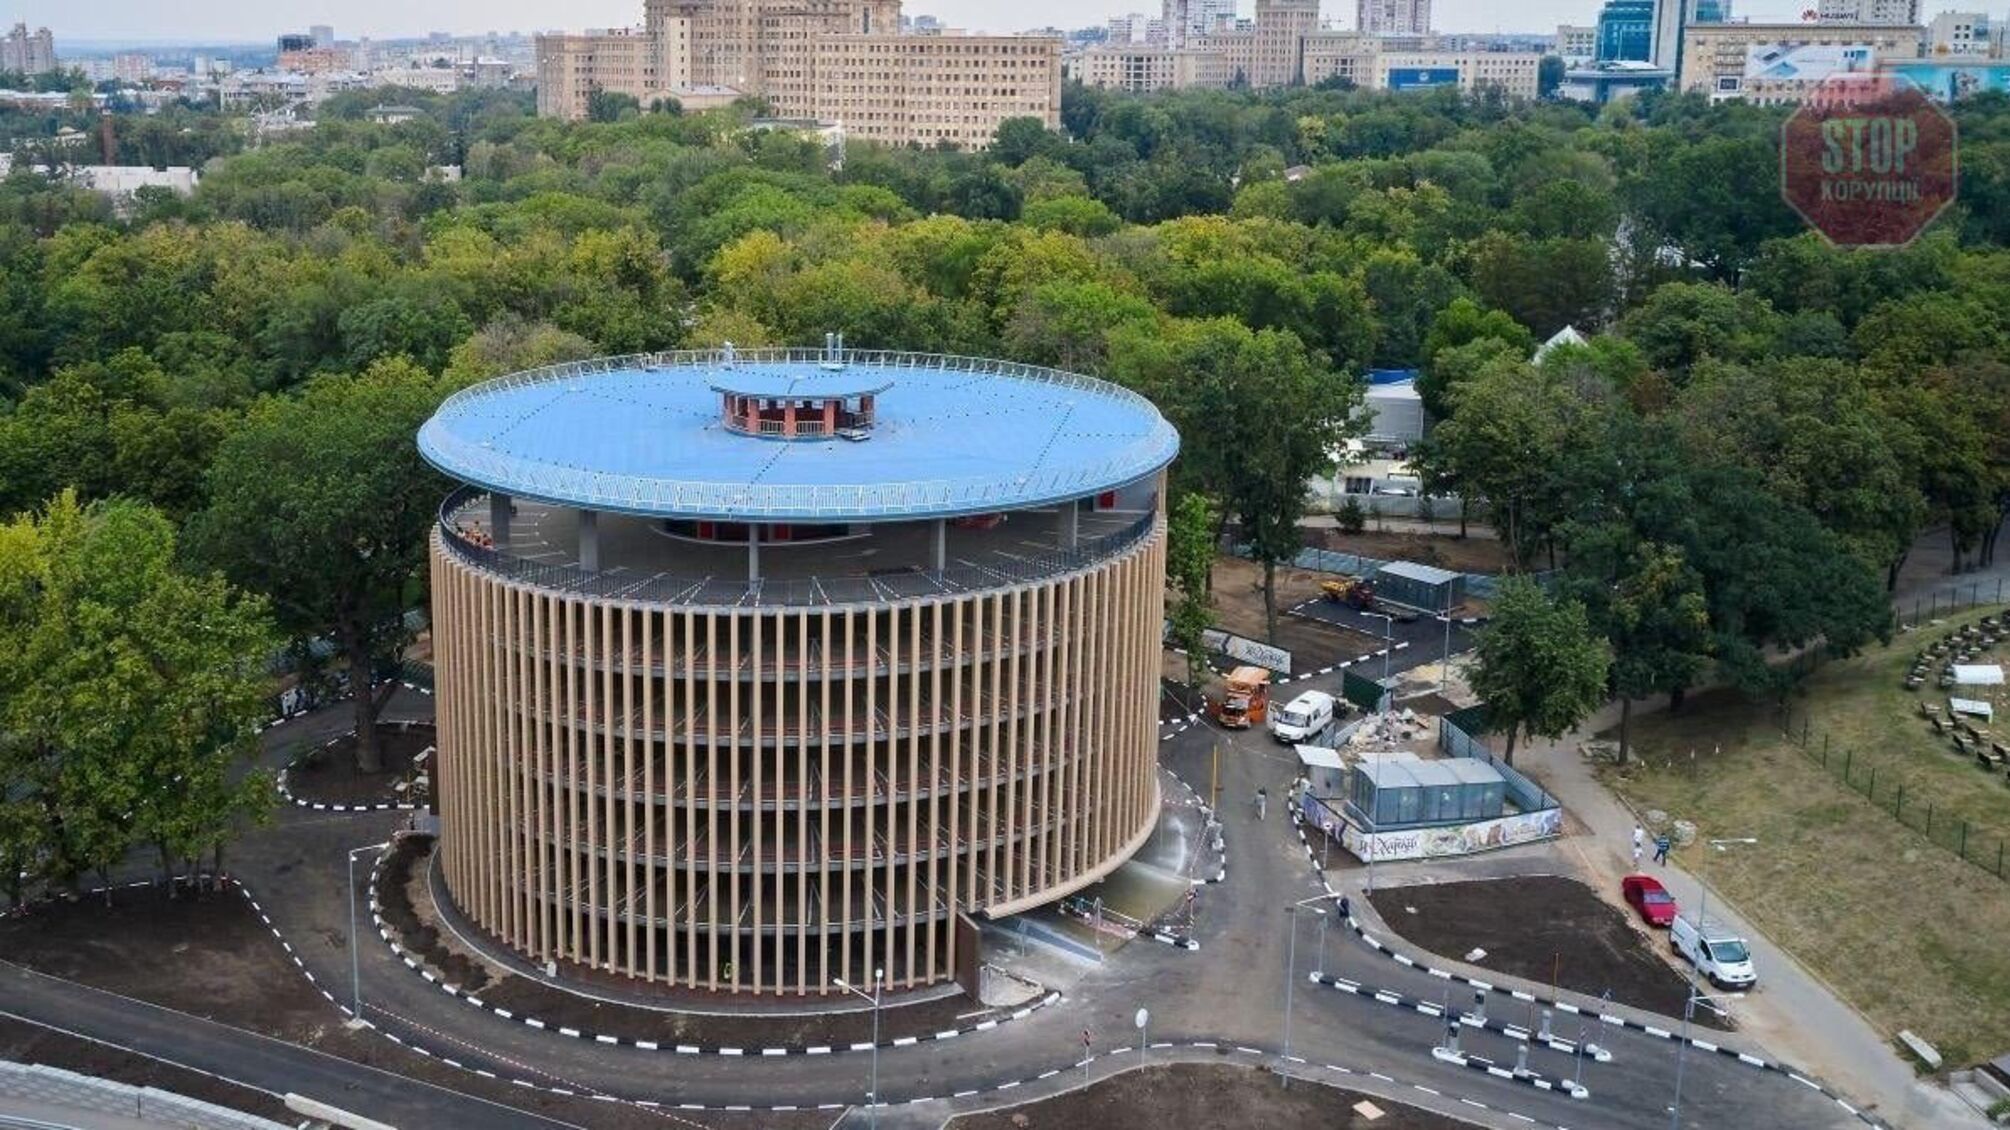 Парковочное место стоимостью однокомнатной квартирой в Киеве: коммунальный паркинг построили в Харькове за 107 млн грн